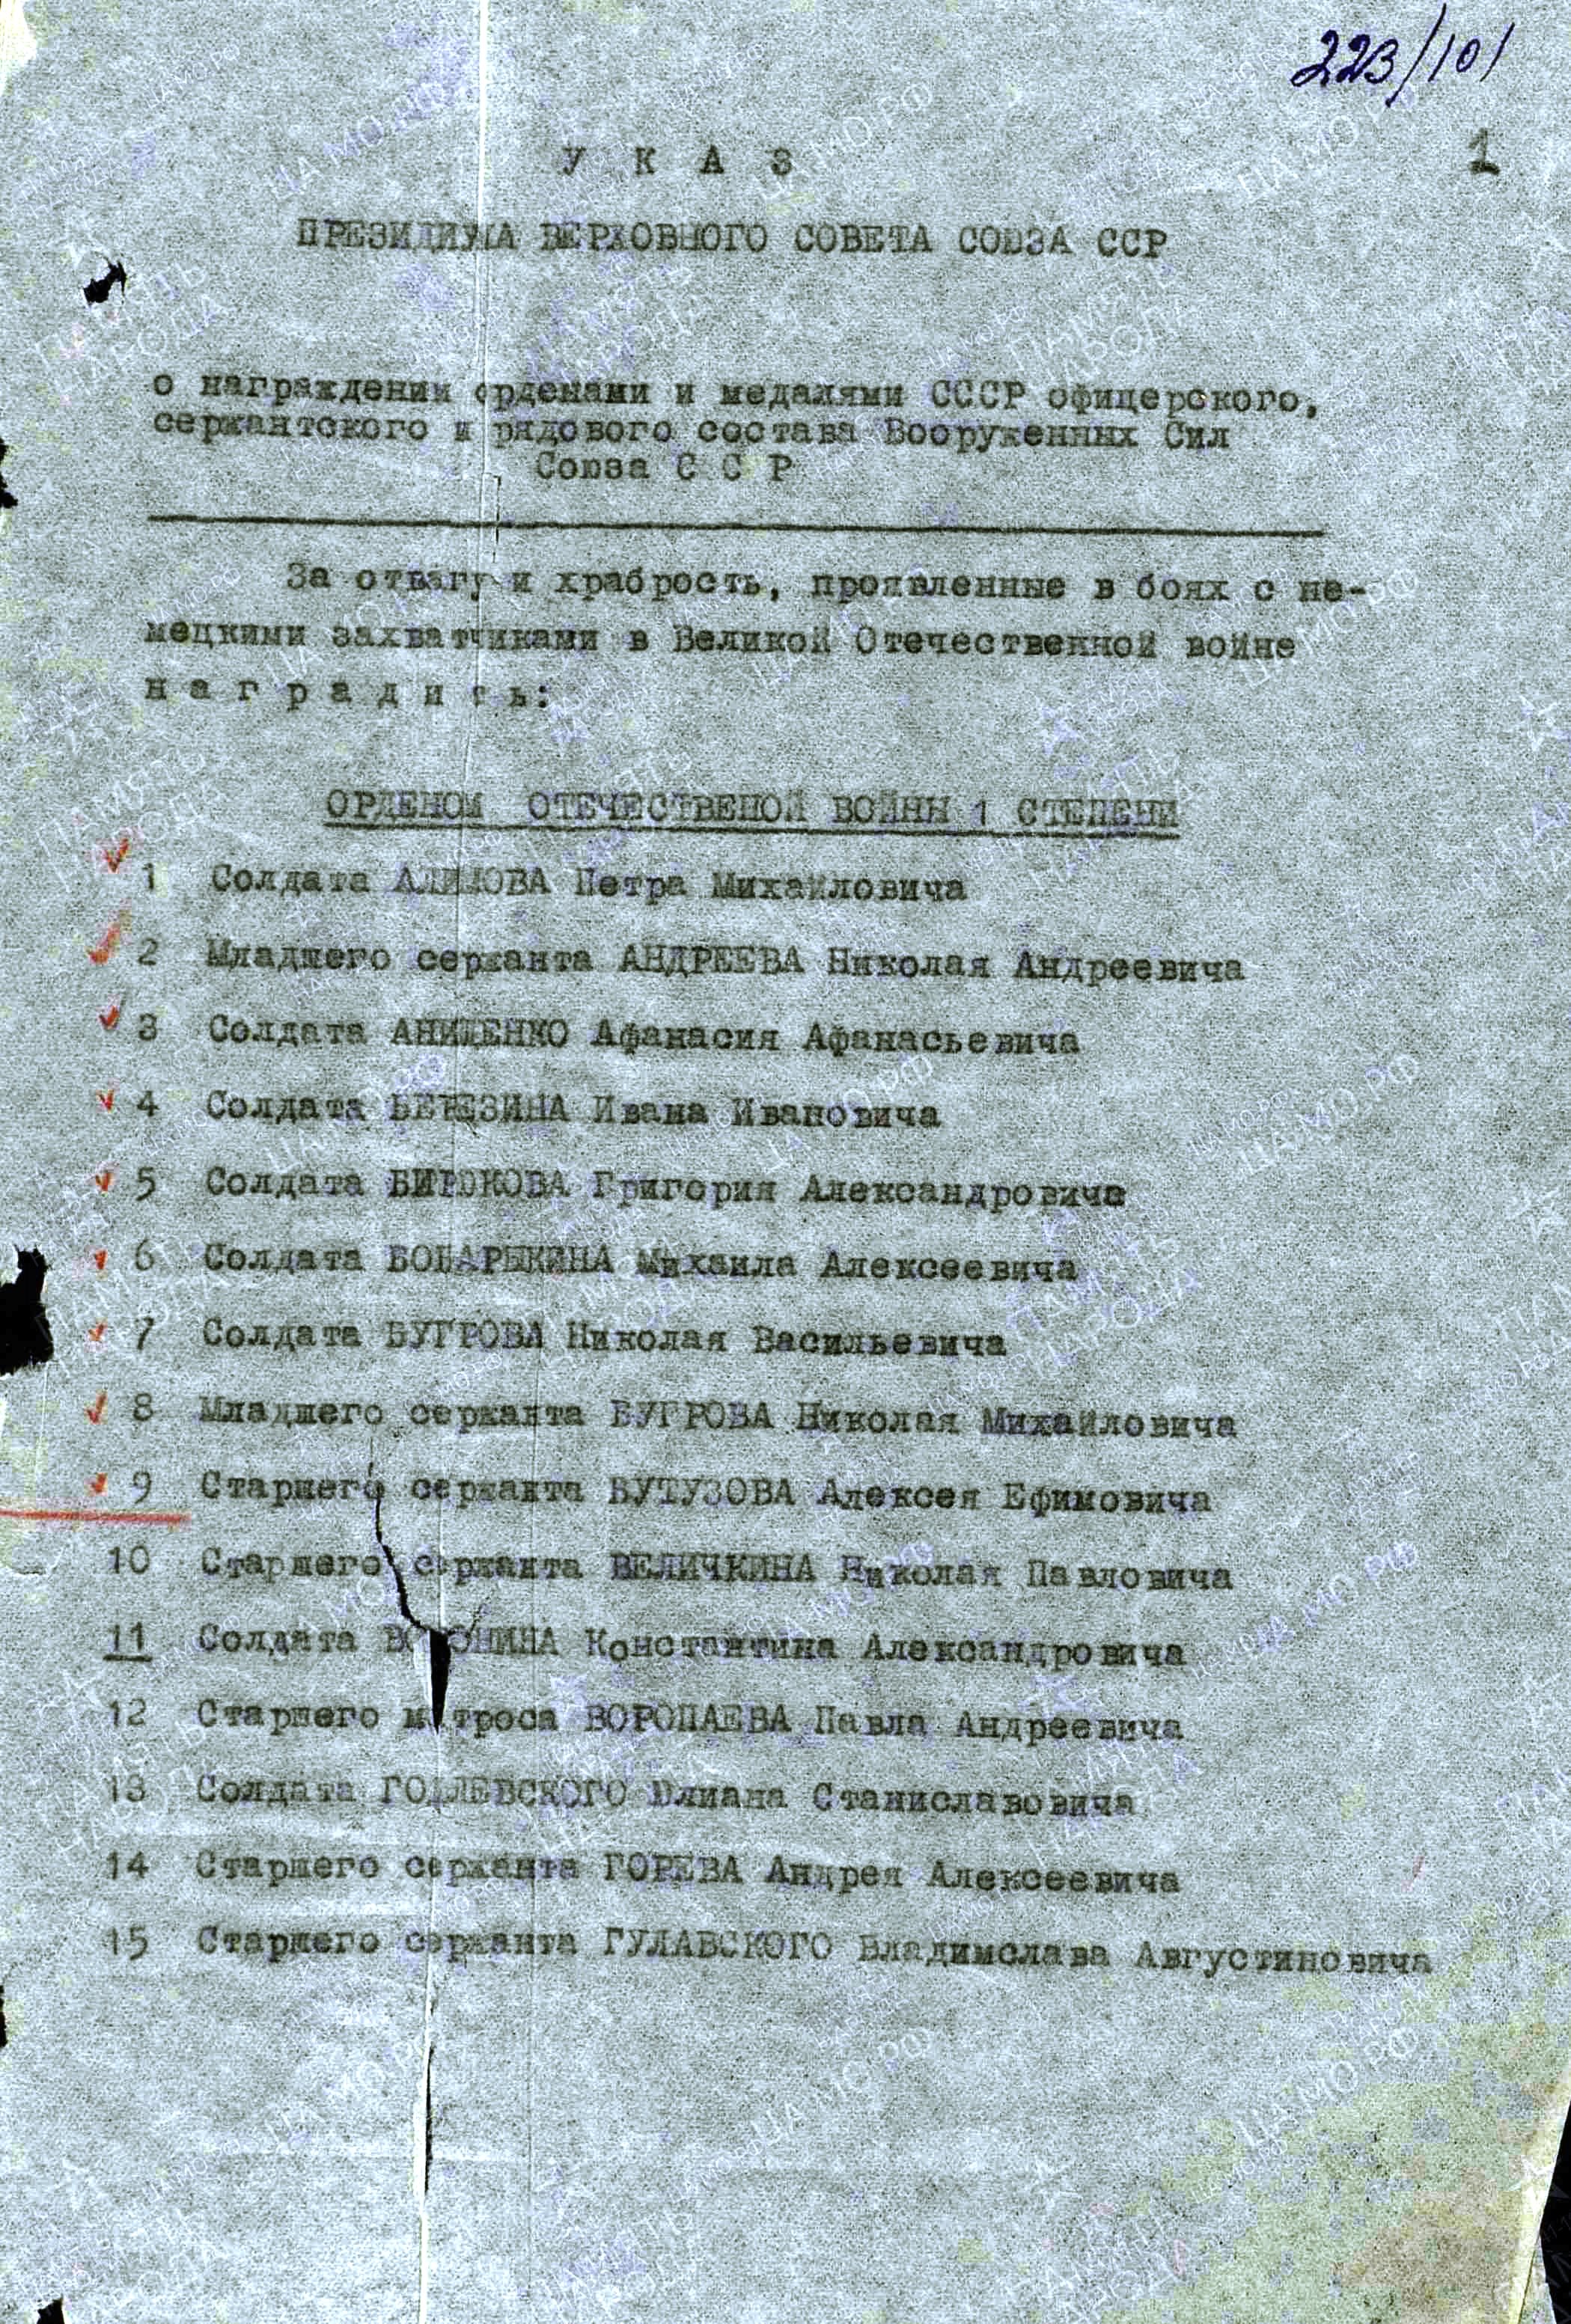 Авдеенков И.Г. Указ о награждении орденами и медалями (2 стр., архивная копия)